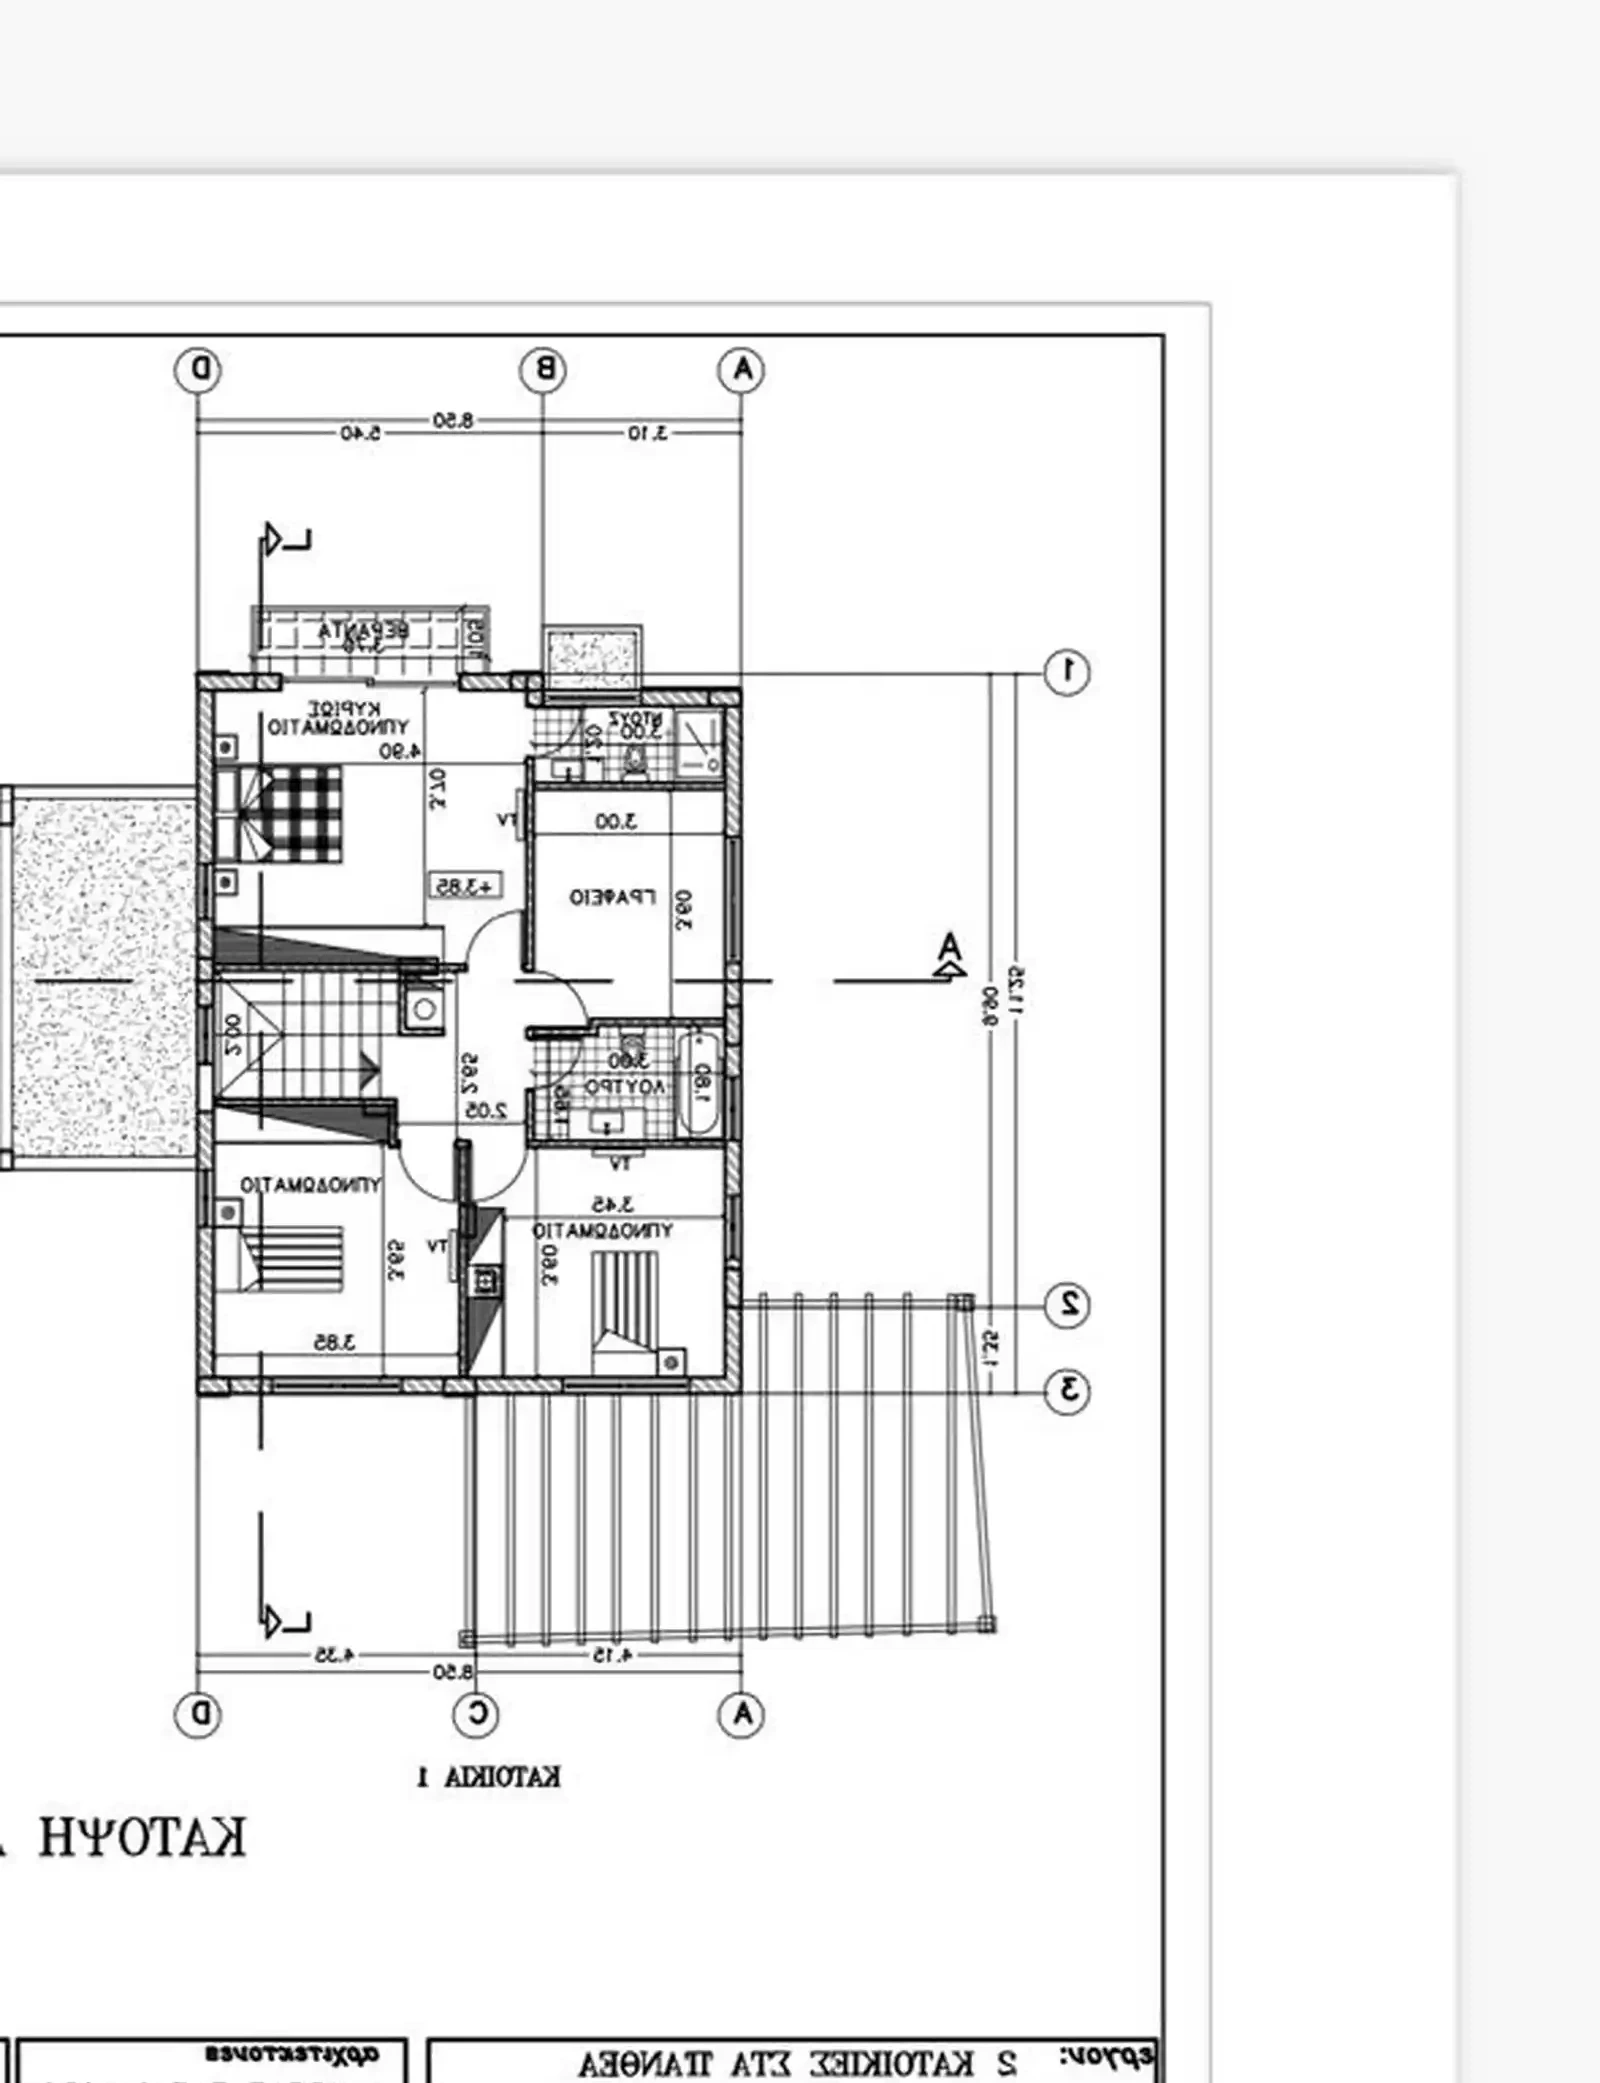 5-bedroom detached house fоr sаle €760.000, image 1